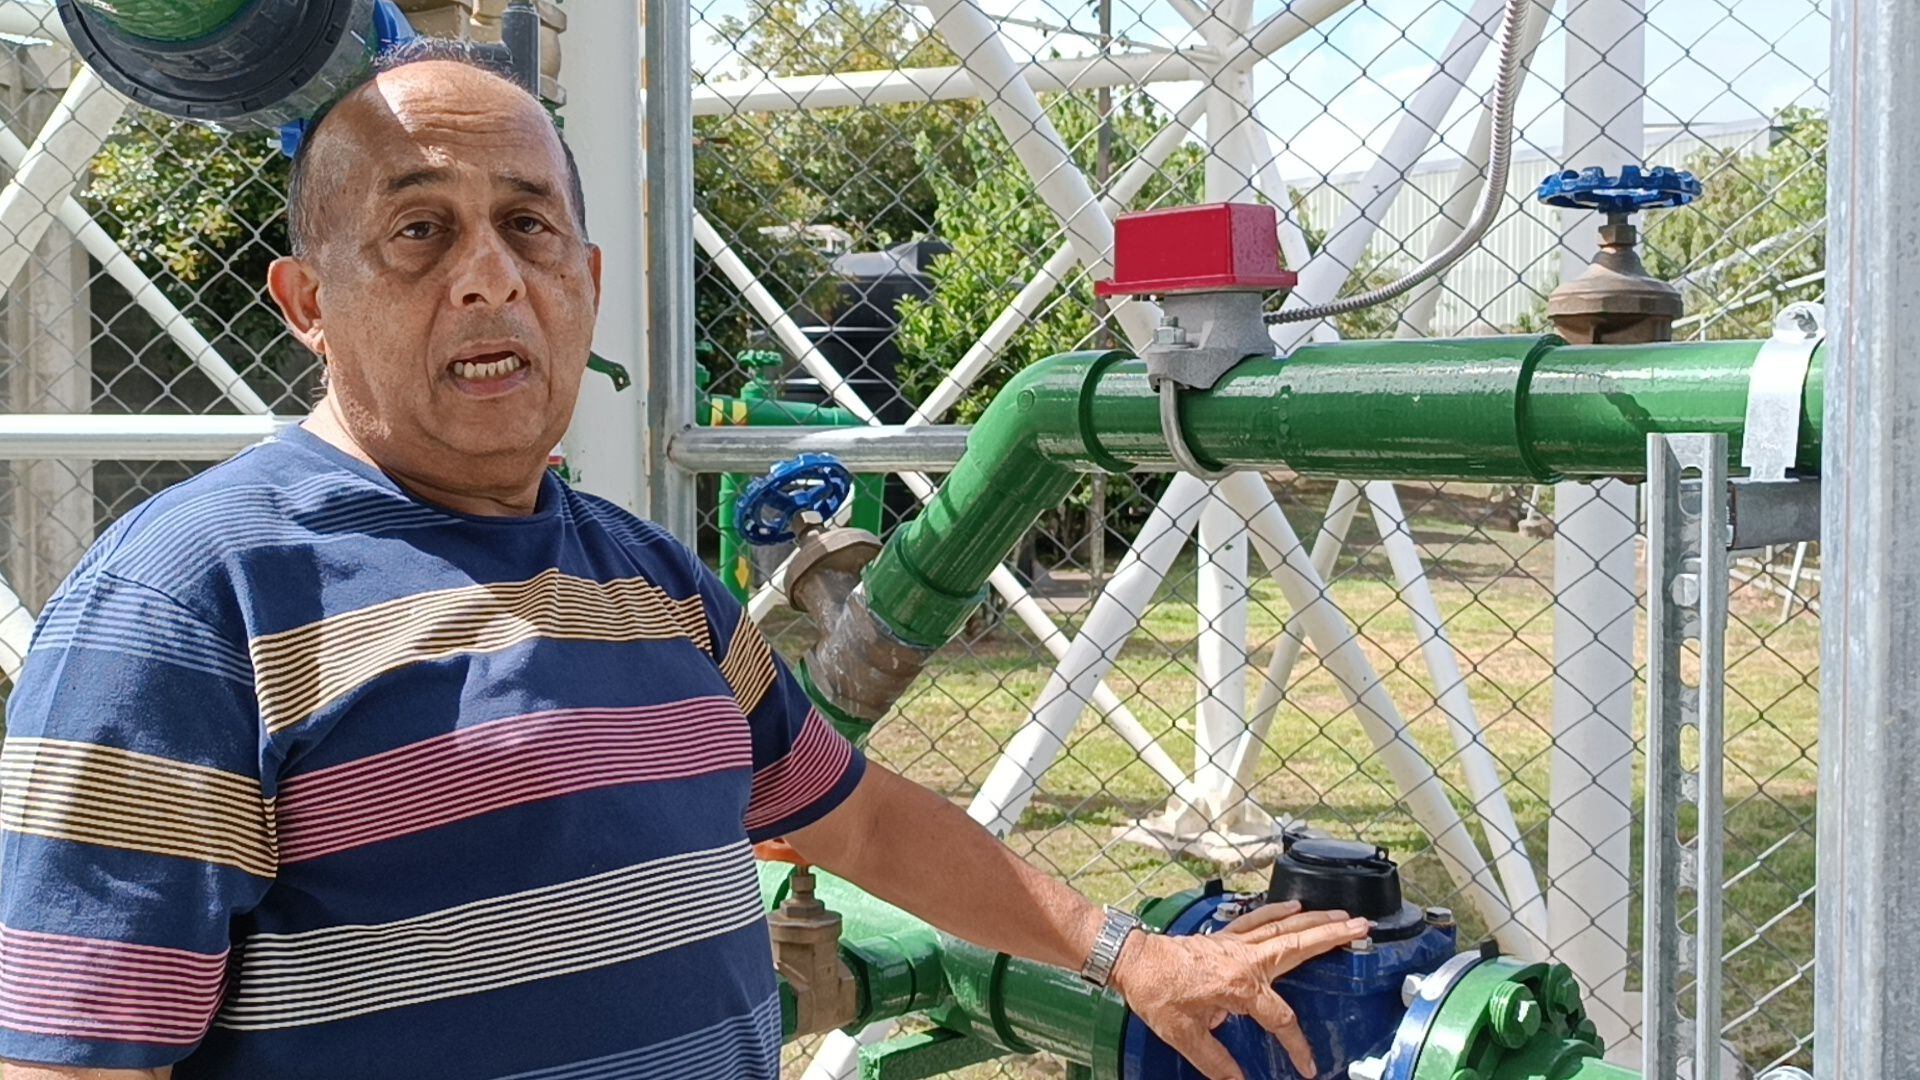 Carlos Madrigal, vicepresidente de la Junta Directiva de la Asada de El Molino, aportó su experiencia de ingeniero para los diseños y colocación del sistema de potabilización del agua. Foto: Keyna Calderón, corresponsal.